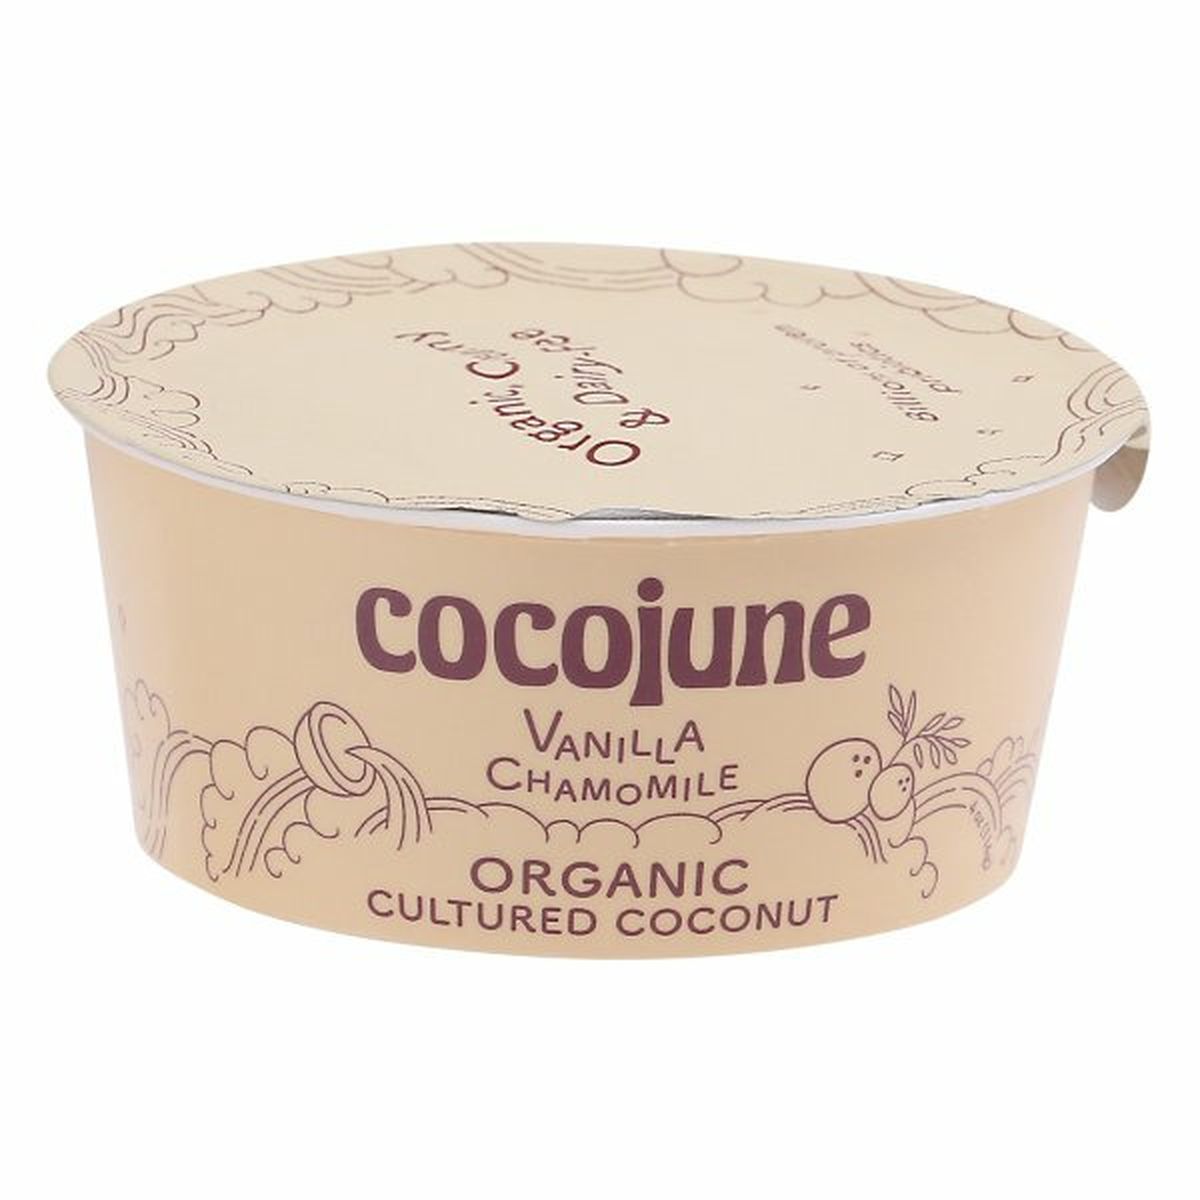 Calories in Cocojune Cultured Coconut, Organic, Vanilla Chamomile